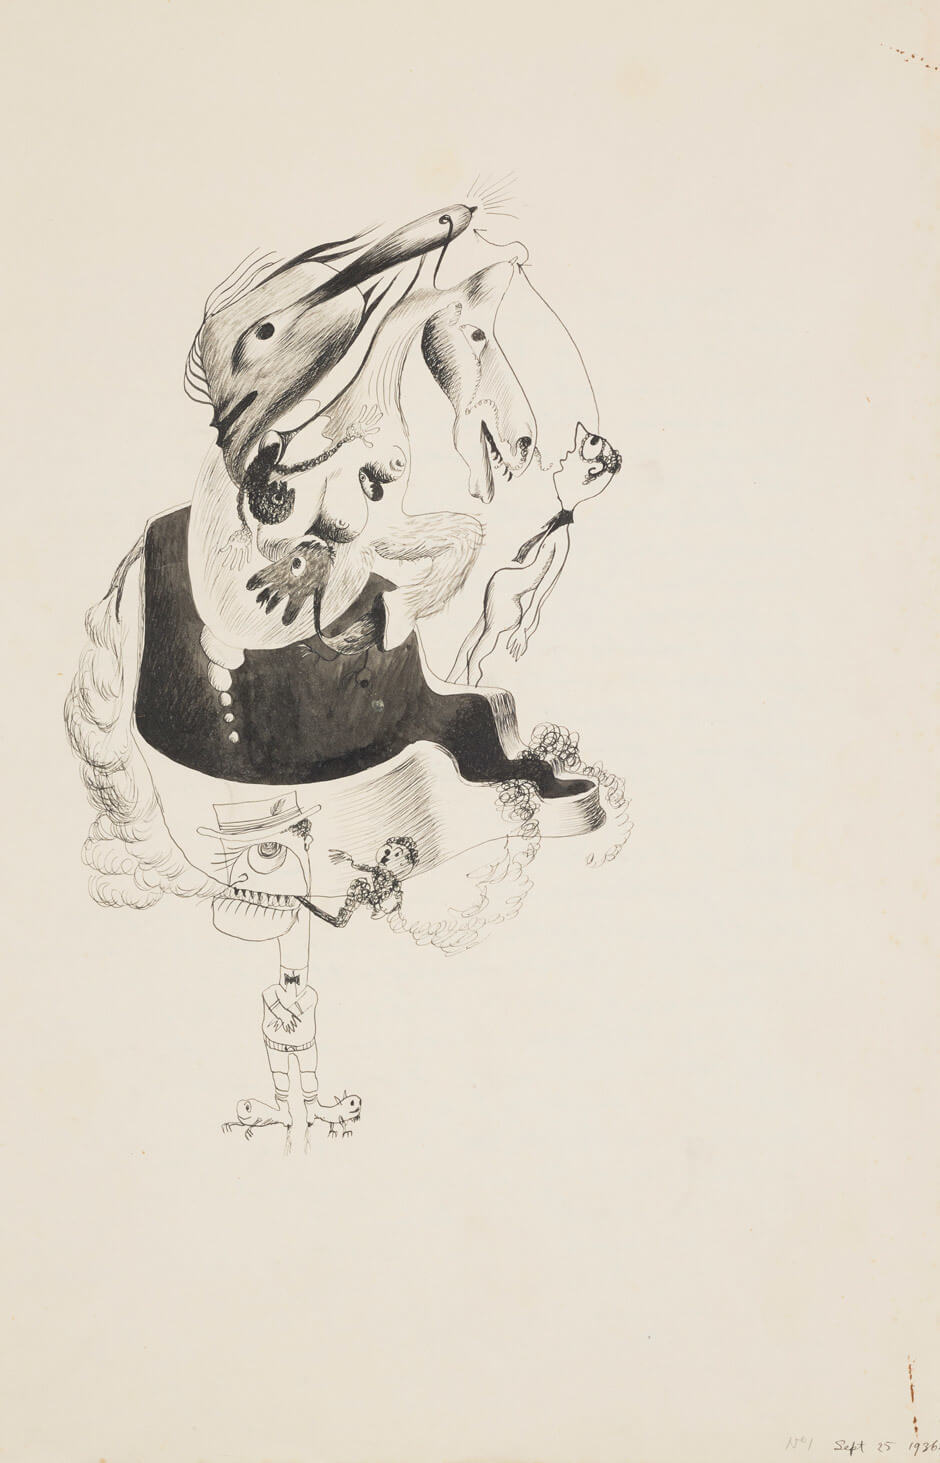 Art Canada Institute, Jock Macdonald, September 25, 1936, No. 1, by Reuben Mednikoff, 1936, 